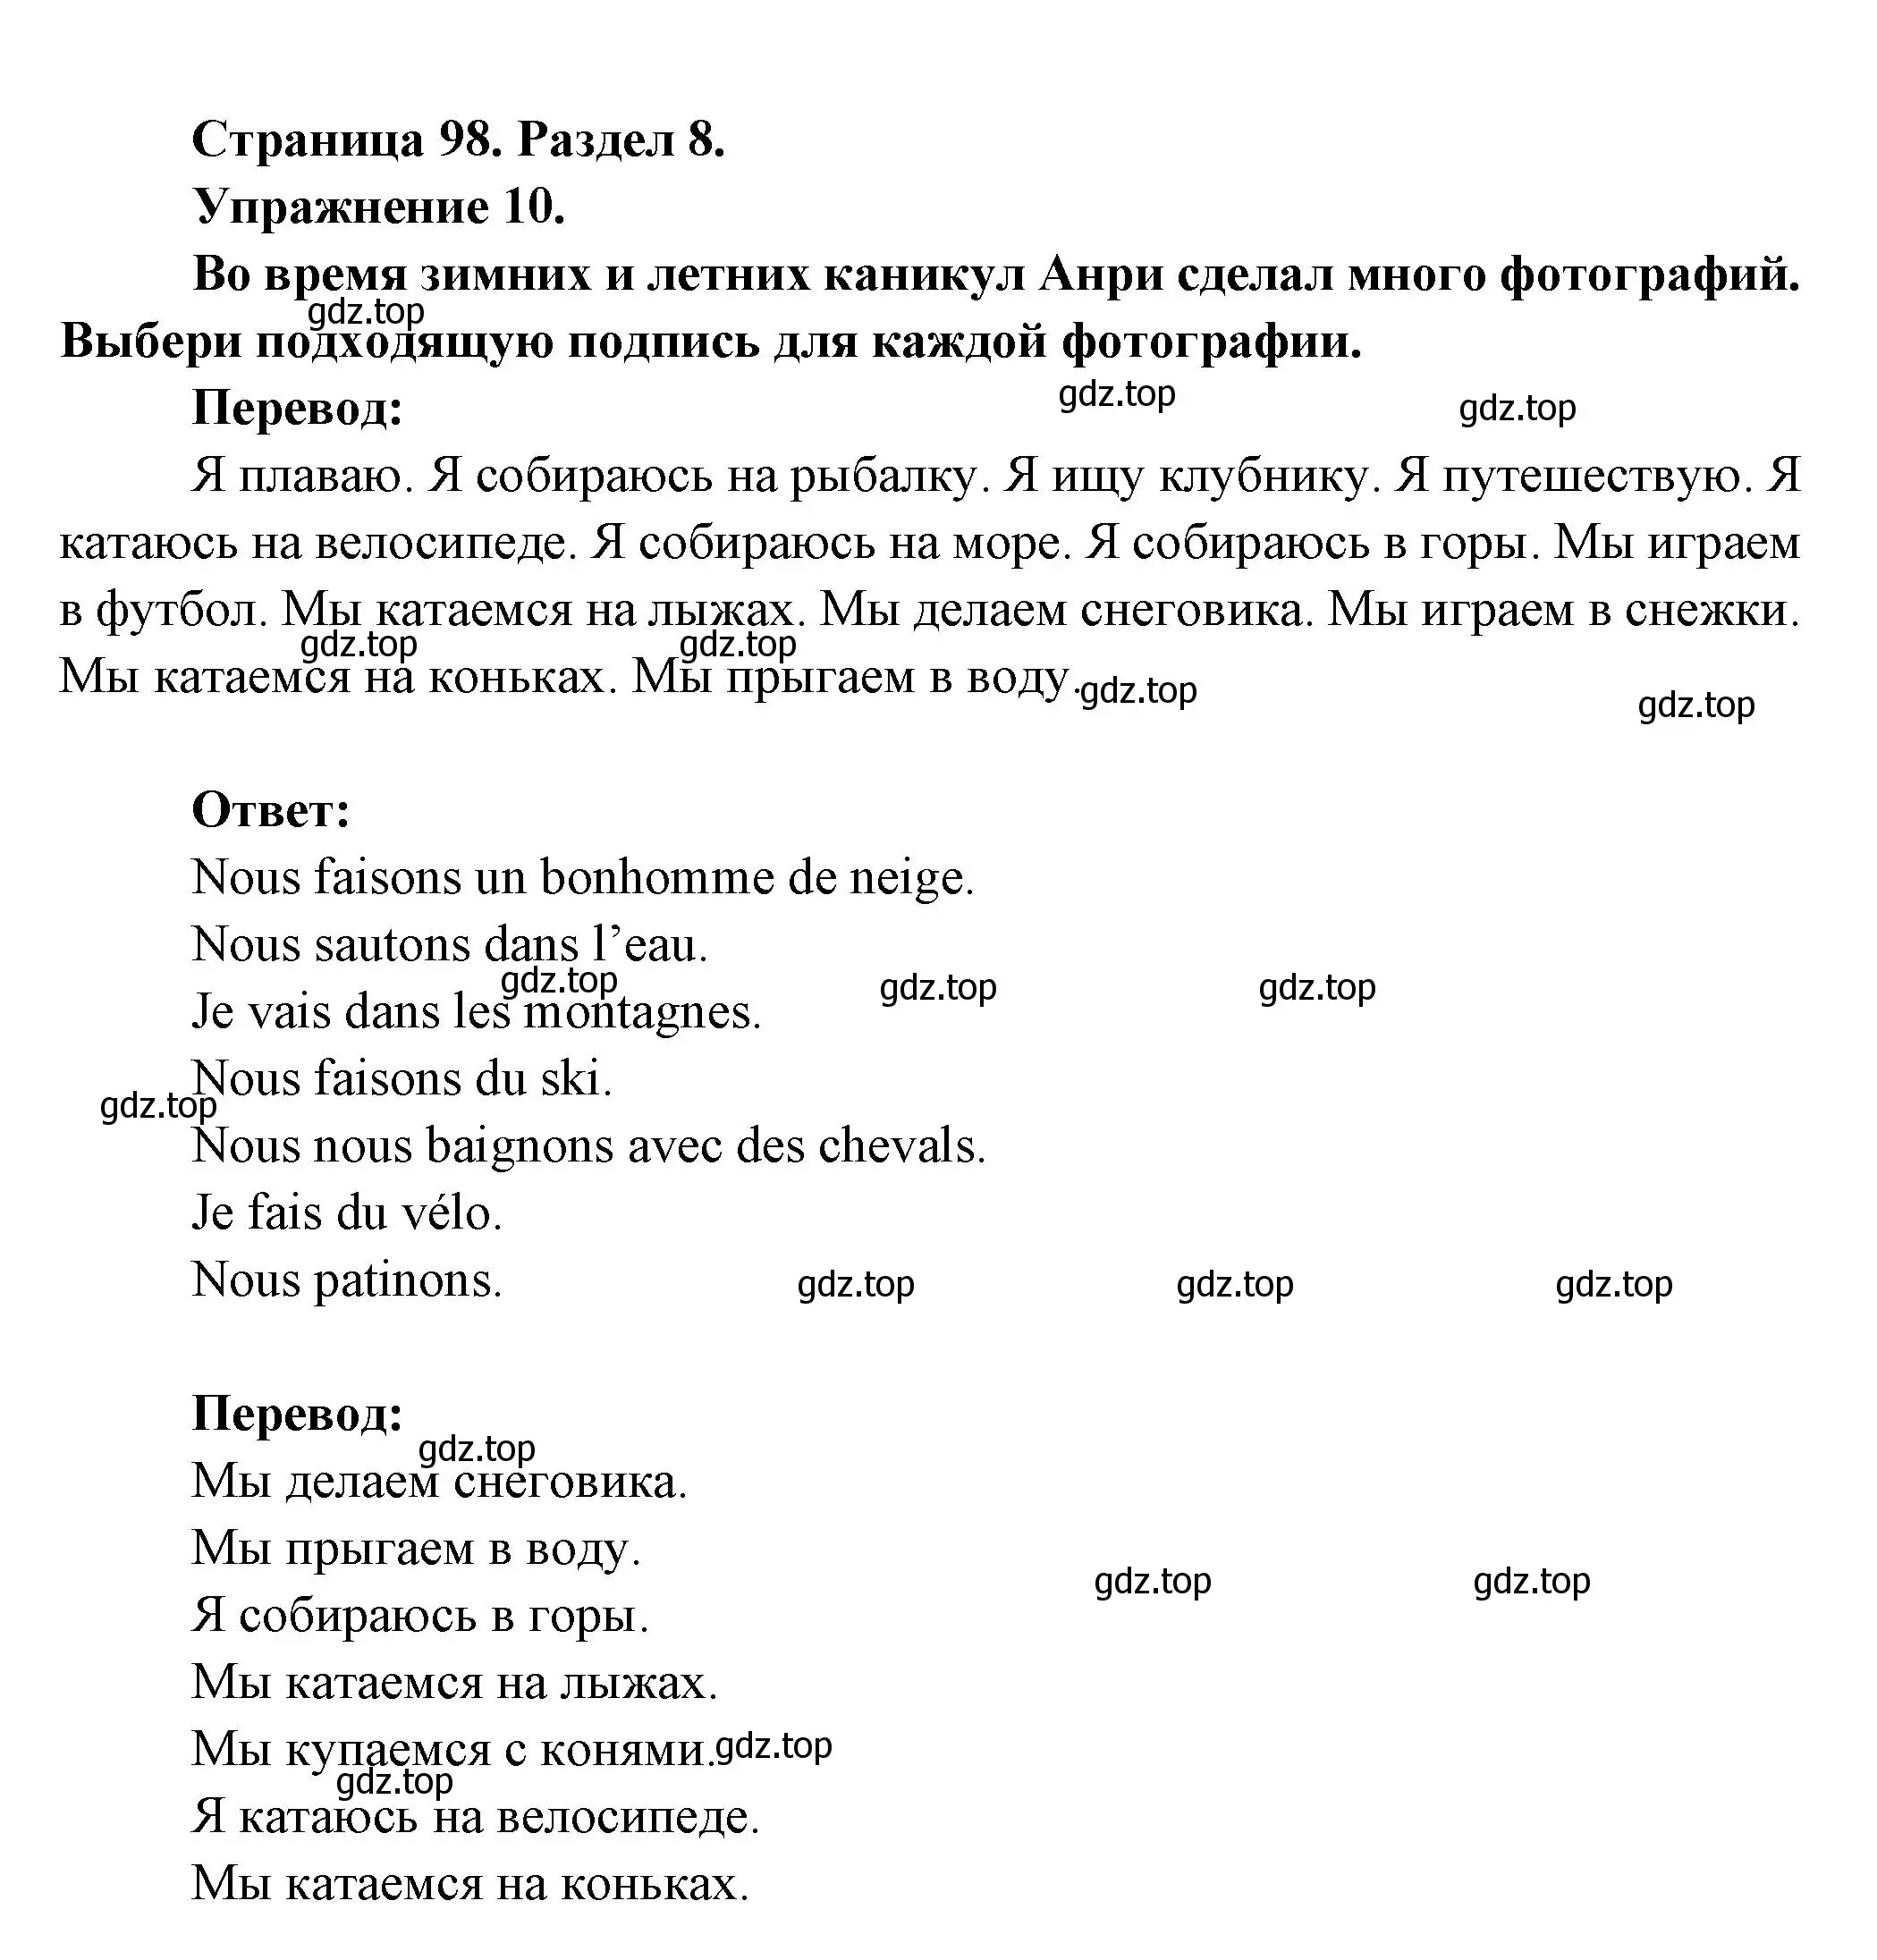 Решение номер 10 (страница 98) гдз по французскому языку 5 класс Береговская, Белосельская, учебник 2 часть